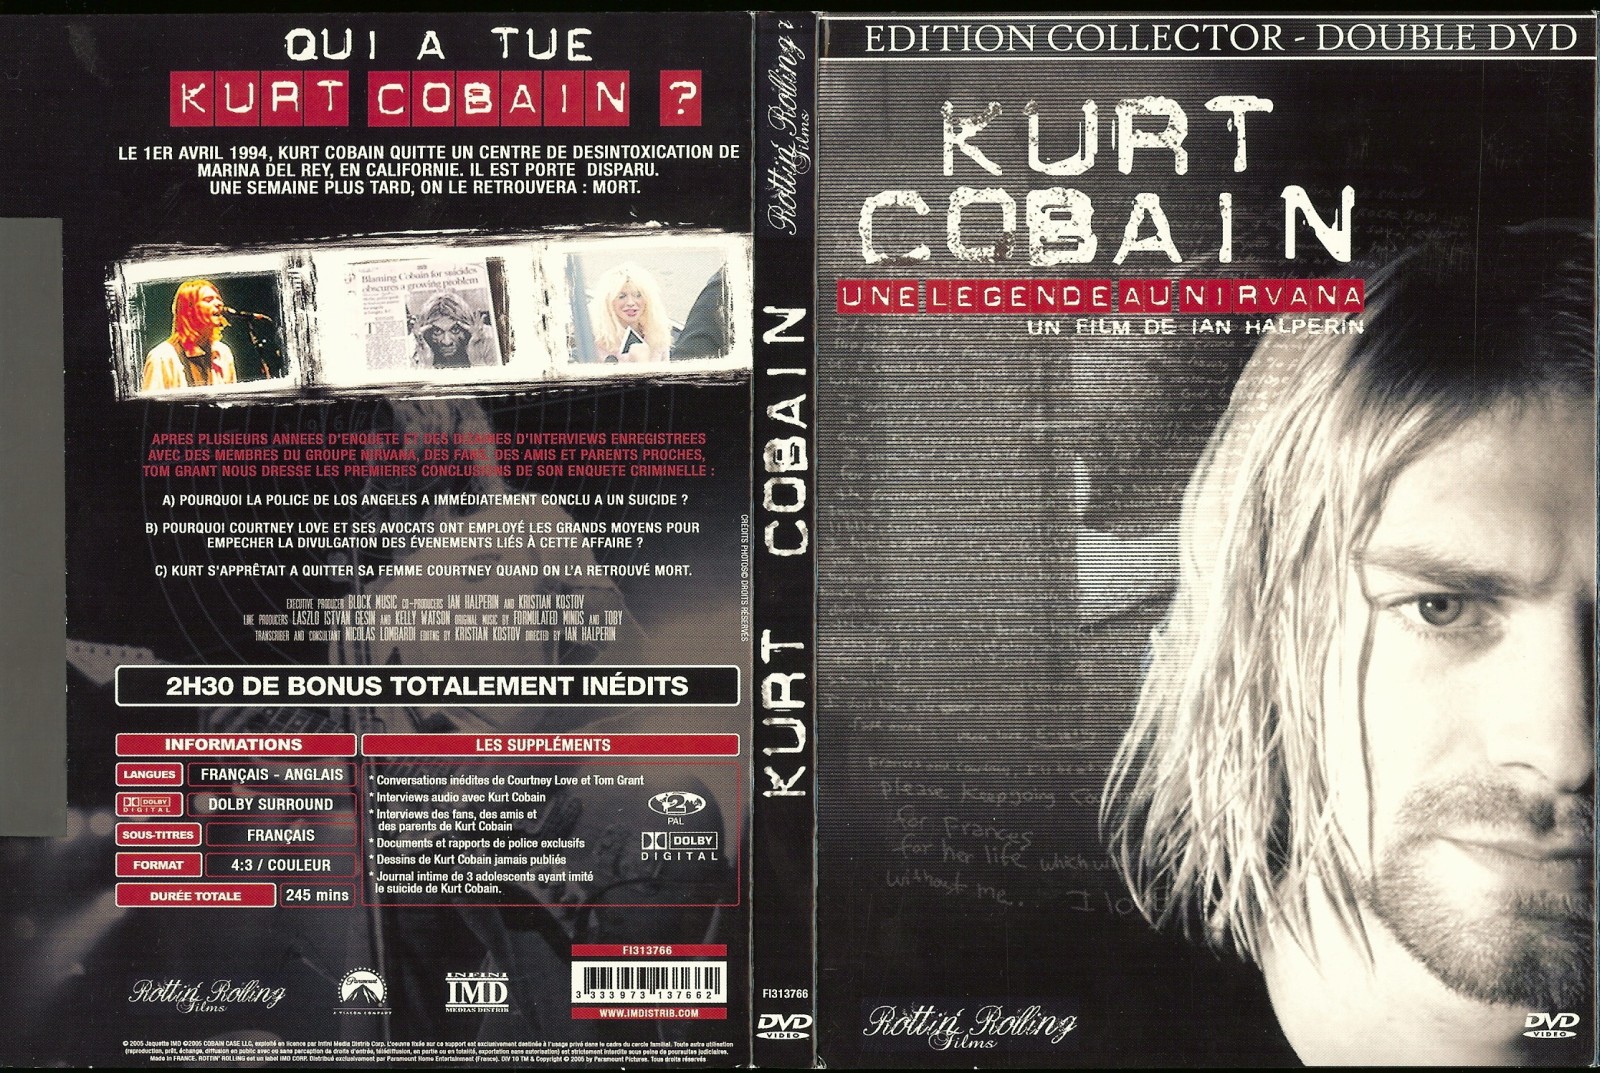 Jaquette DVD Kurt Cobain une lgende au nirvana